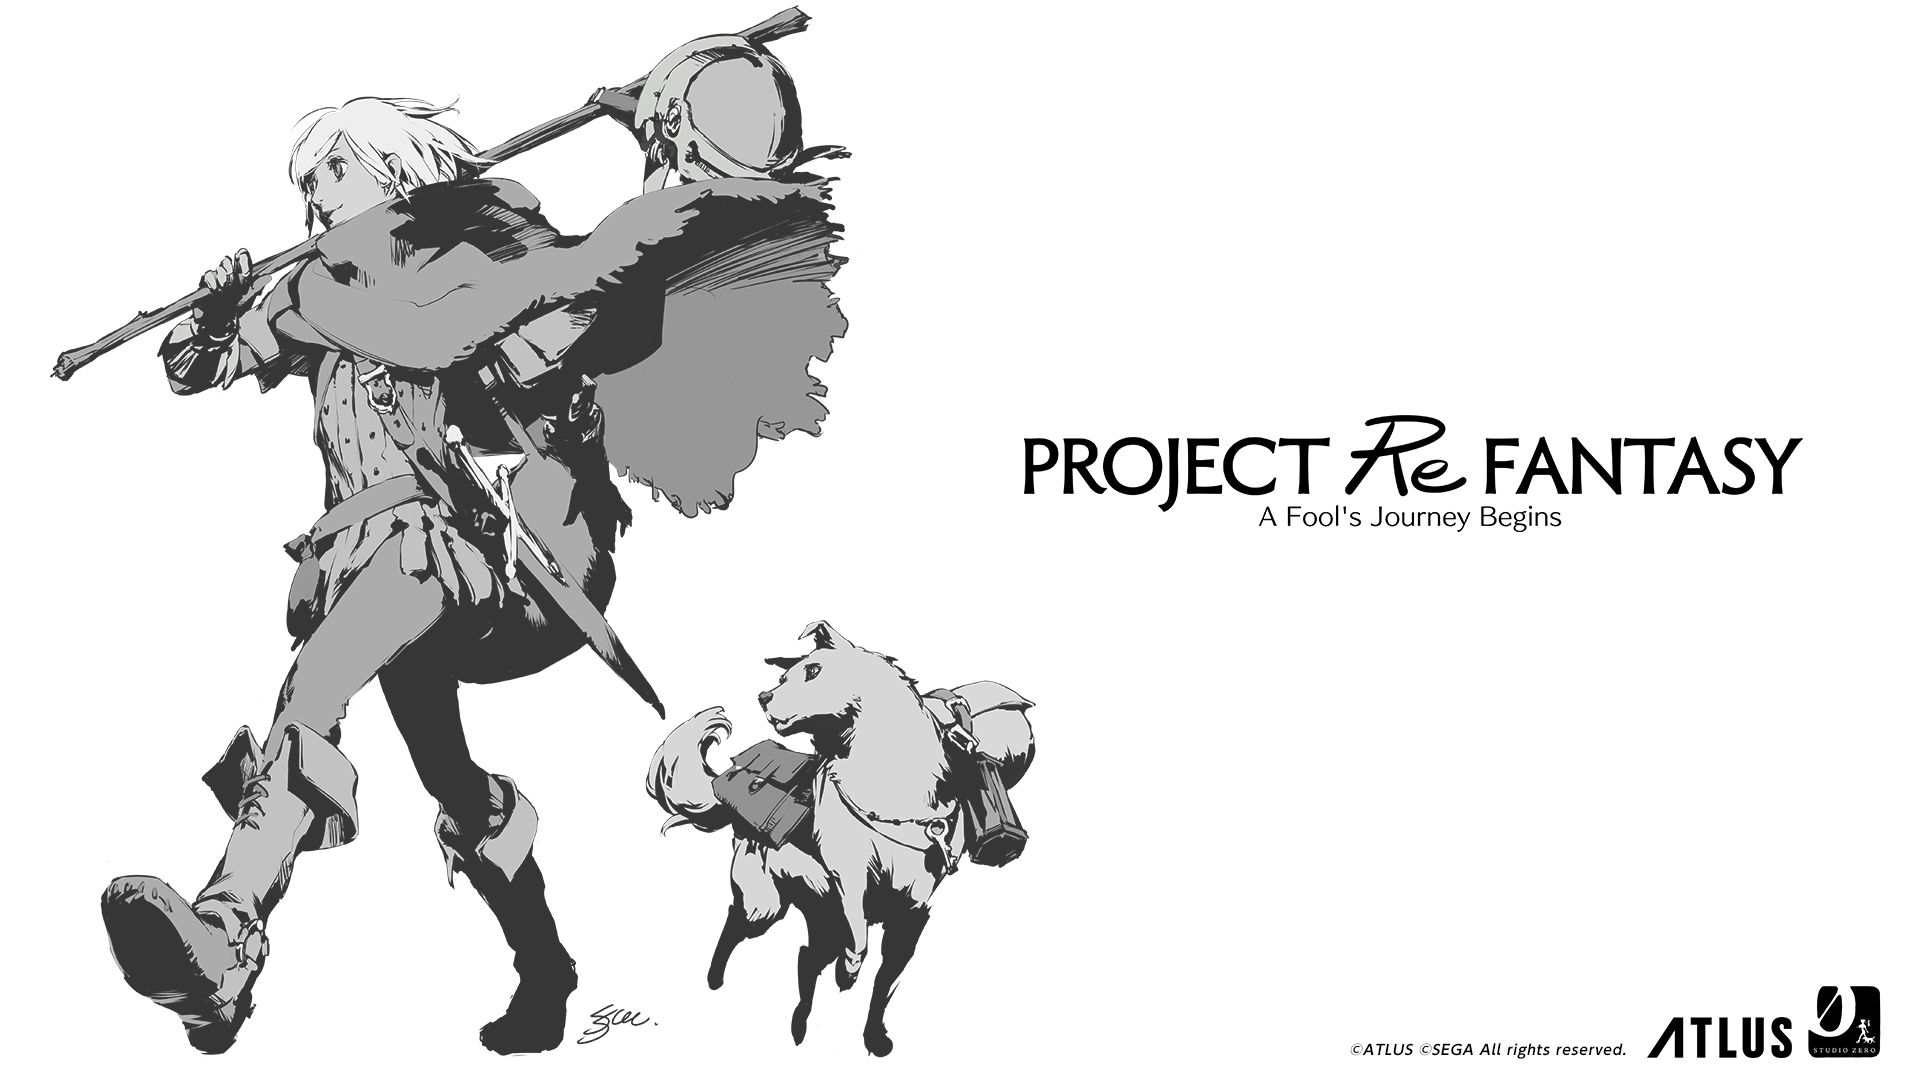 Persona y Project Re Fantasy tendrán nuevos detalles en 2021, según Atlus